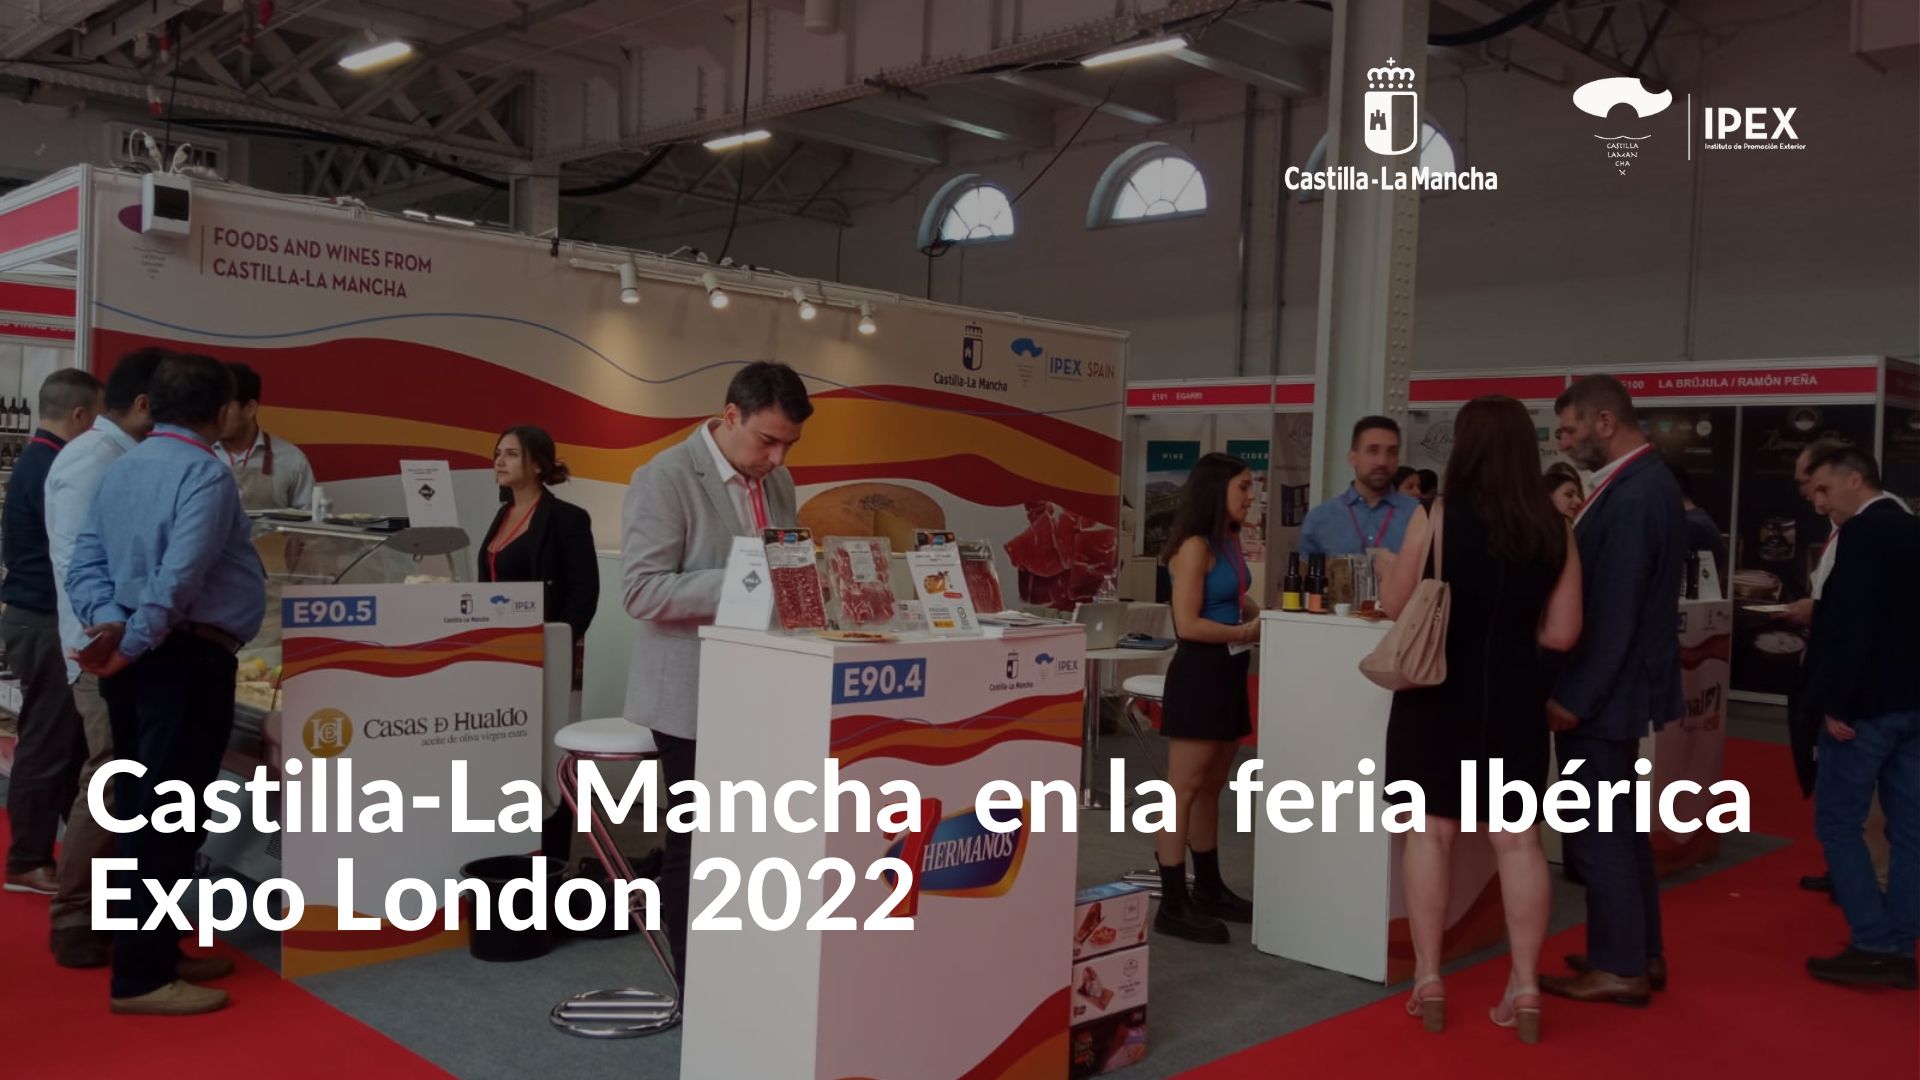 Castilla-La Mancha expone sus alimentos en la feria Ibérica Expo London 2022